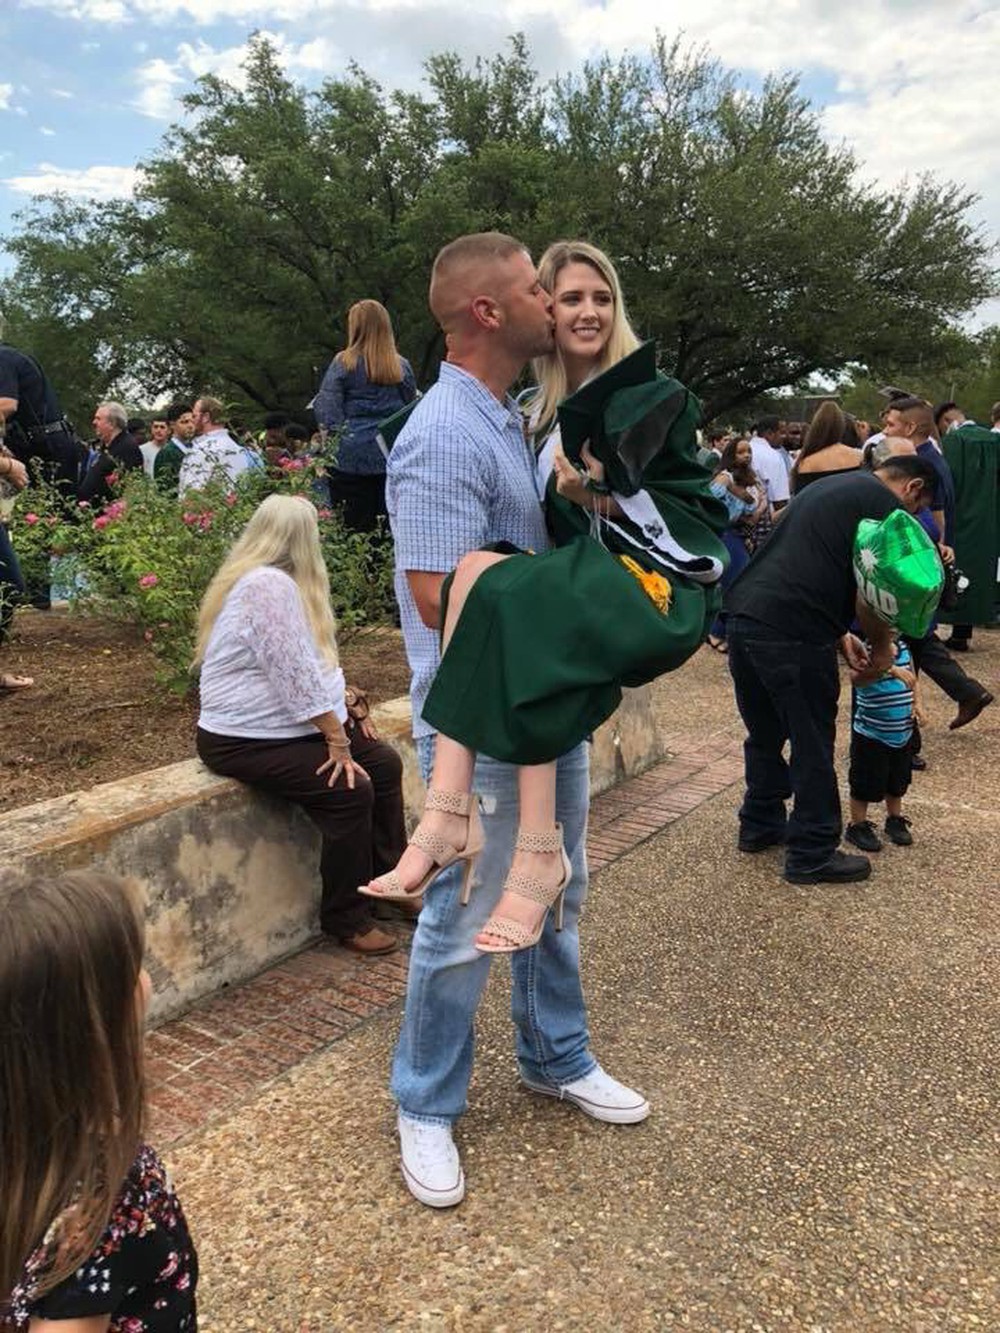 Ảnh ngày ấy bây giờ cực độc: Chàng trai 19 tuổi ôm hôn con gái ngày tốt nghiệp, 18 năm sau làm điều tương tự trong lễ ra trường của đứa trẻ - Ảnh 3.